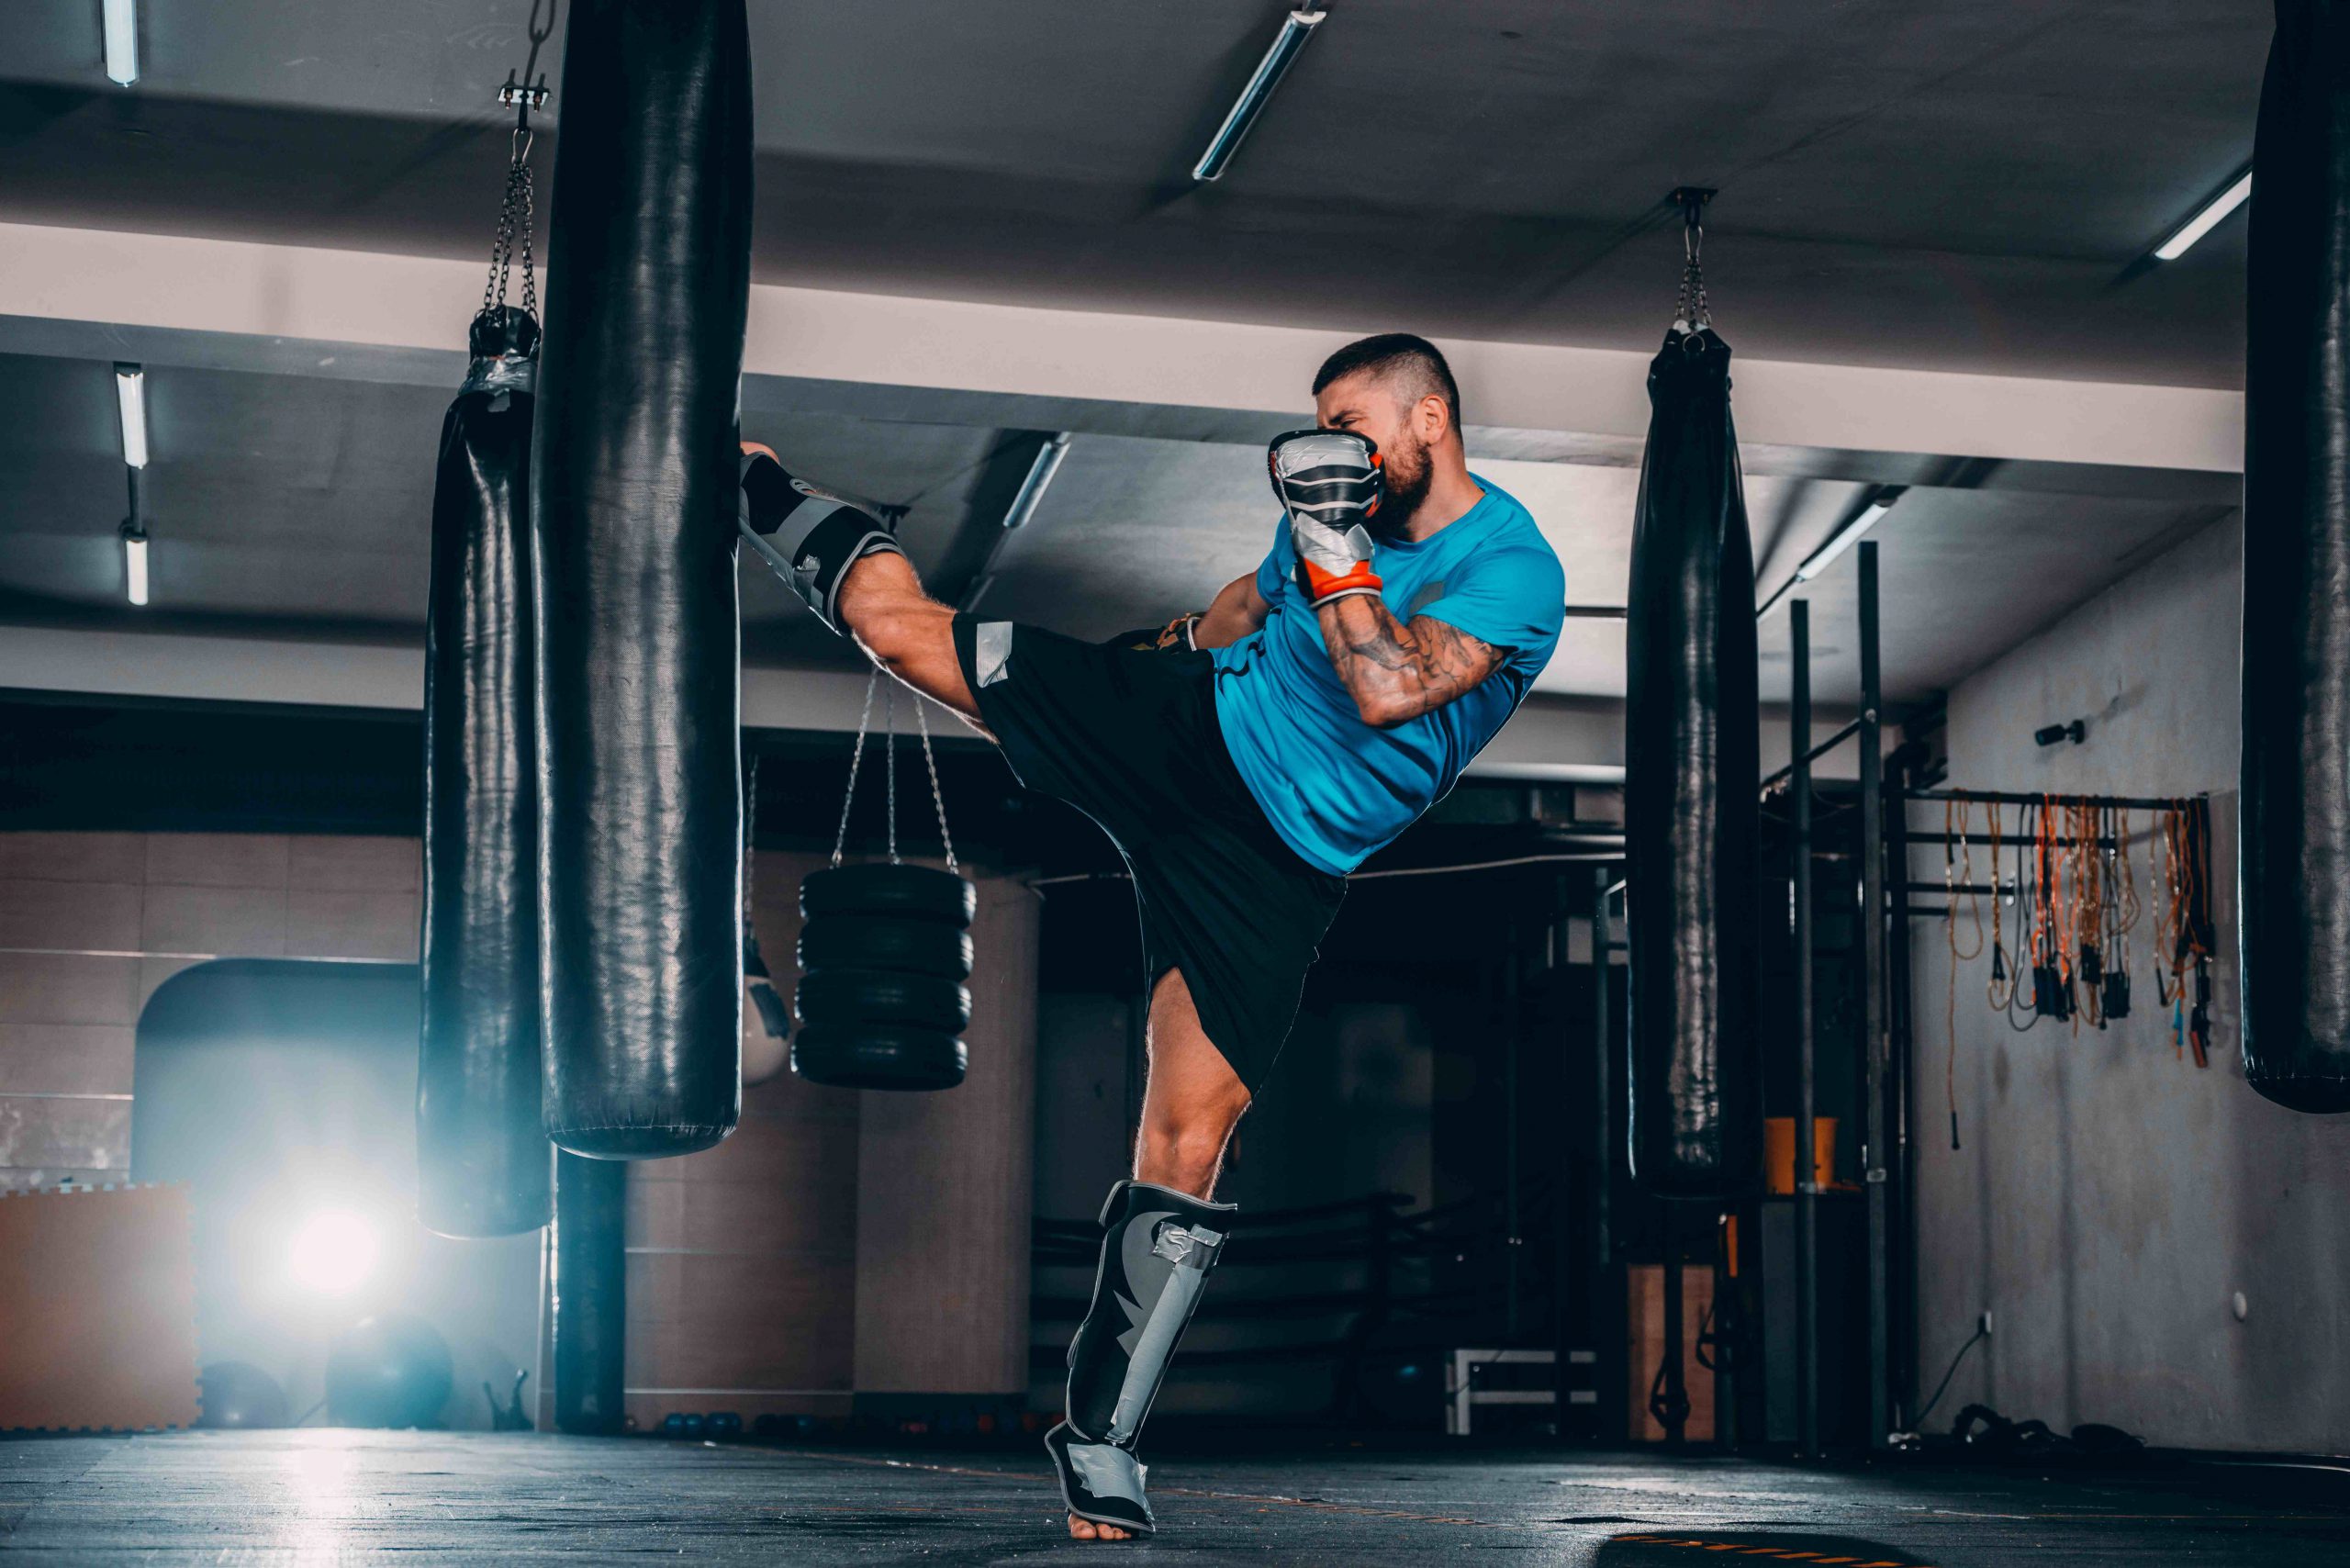 Man kicking punching bag during kickboxing workout